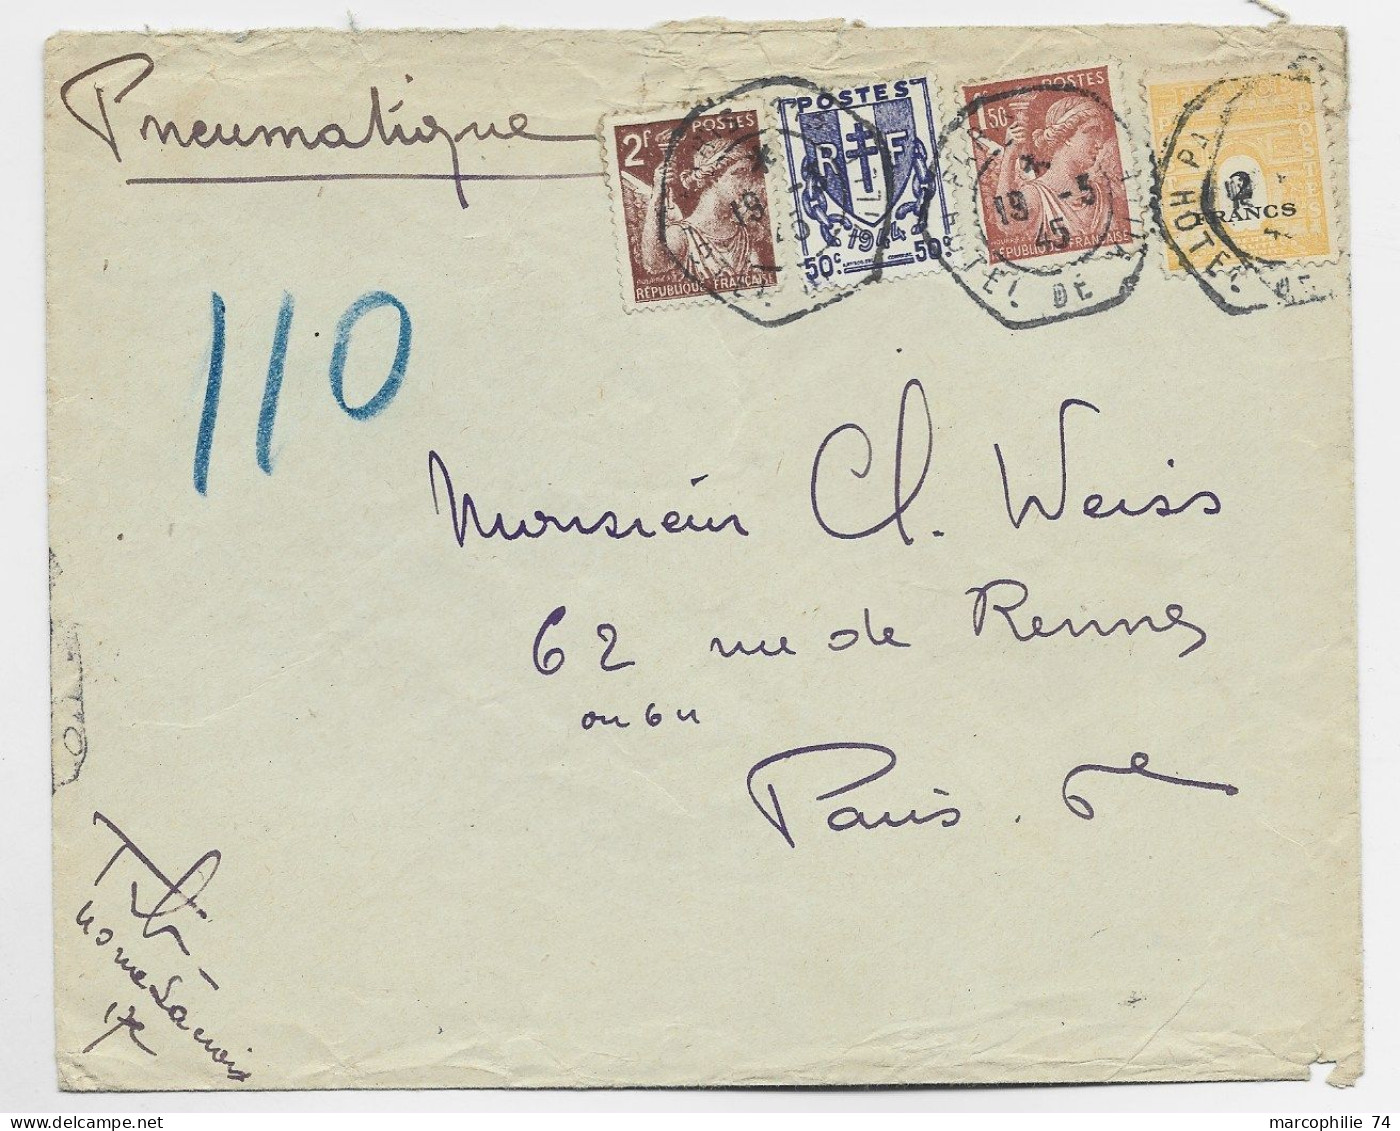 FRANCE ARC TRIOMPHE 2FR+ CHAINE 50C + 2FR+1FR50  PNEUMATIQUE C. HEX PARIS 19.3.1945 HOTEL DE VILLE AU TARIF - 1944-45 Arco Di Trionfo